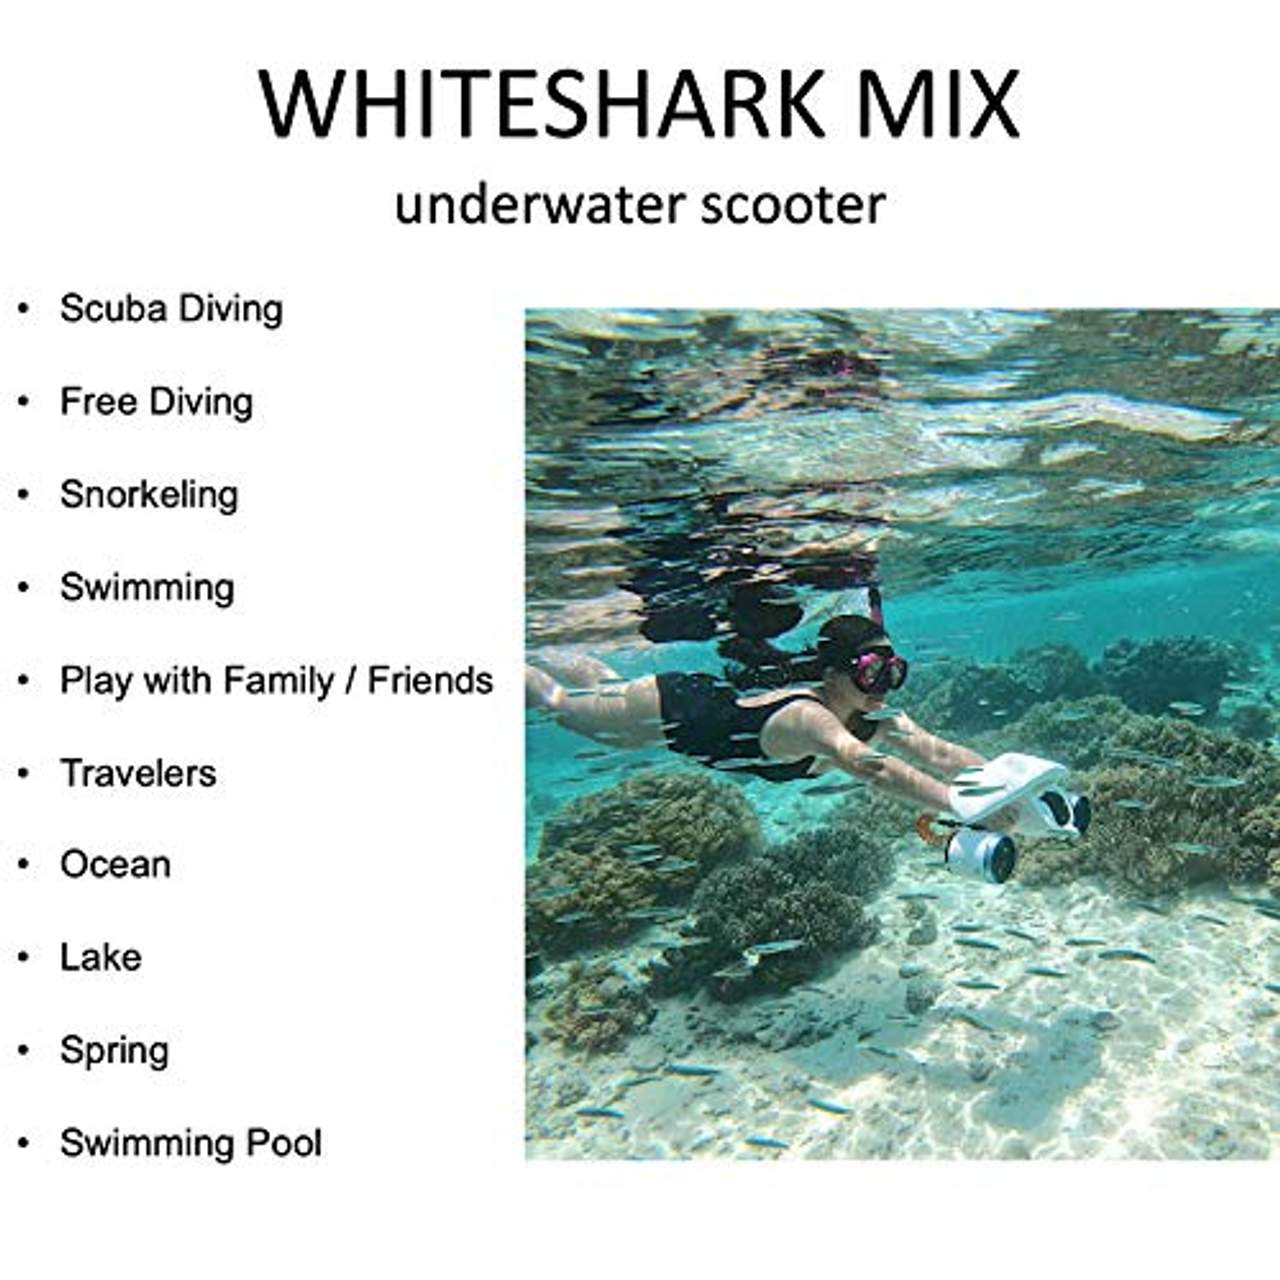 Sublue Elektrischer Unterwasserscooter WhiteShark Mix Tiefe 40 Meter